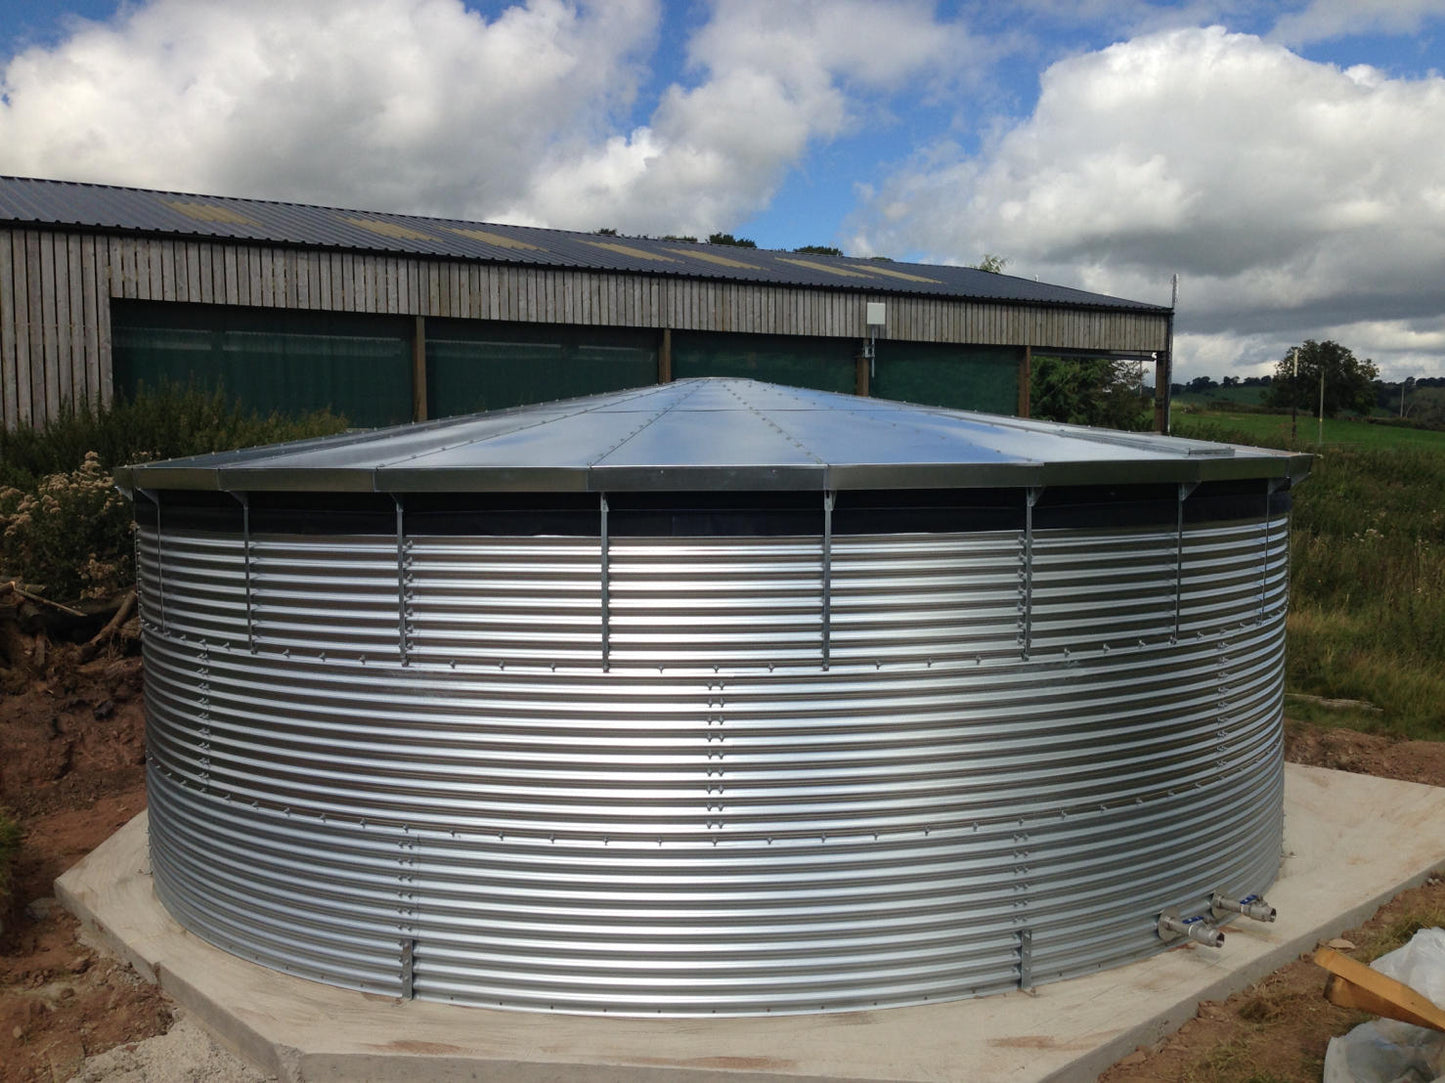 16,000 litre Galvanised Steel Water Tank